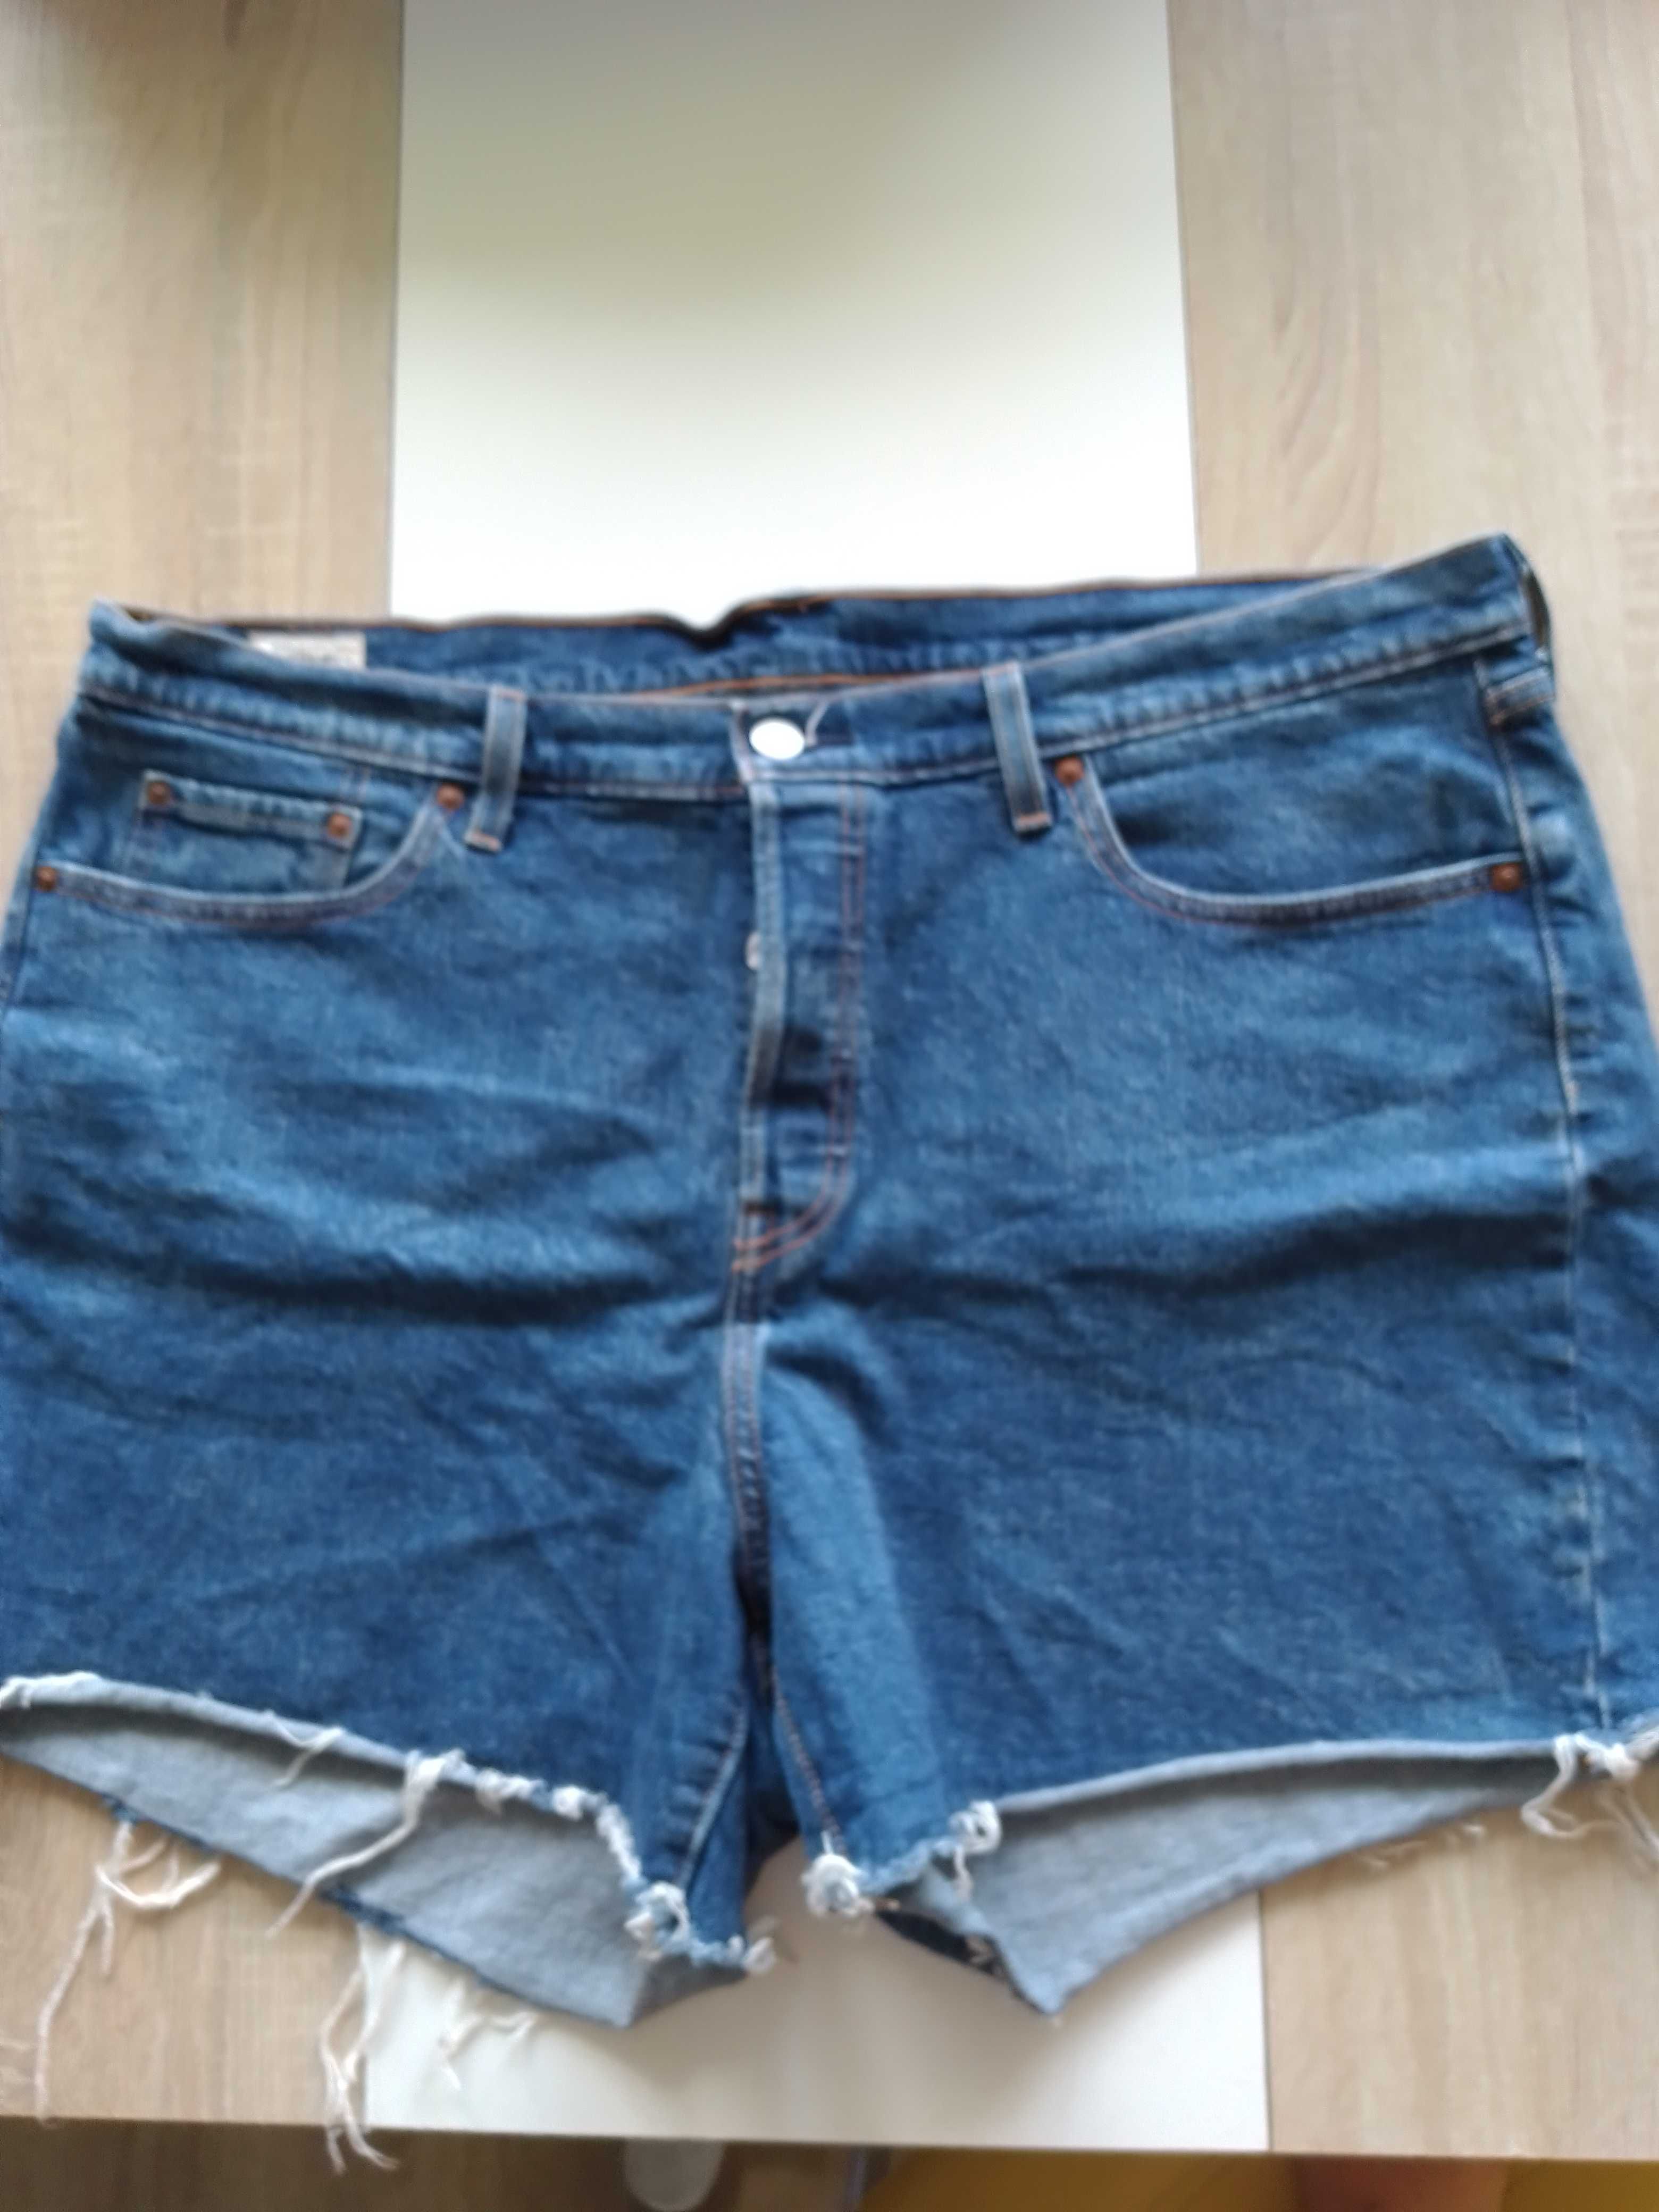 Spodnie krotkie damskie Levi's jeans, rozmiar XL